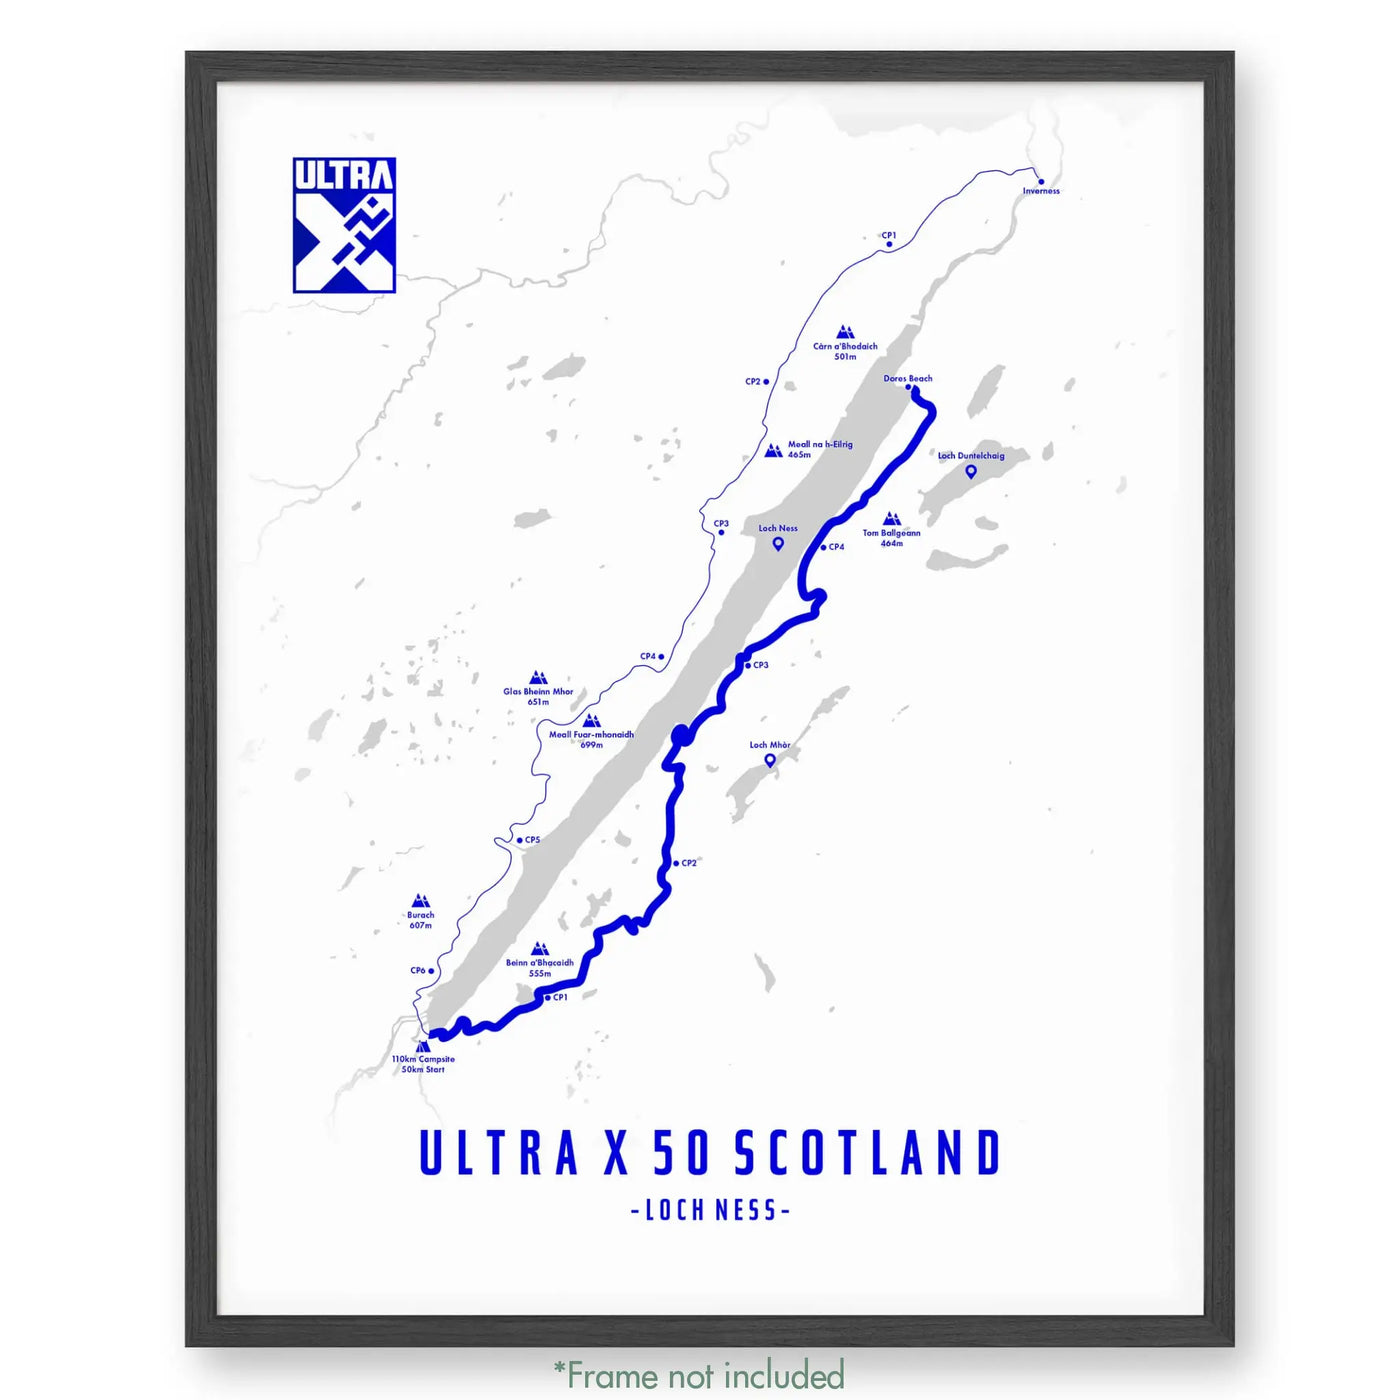 Ultra X 50 Scotland Poster 12 X 16 / Matte